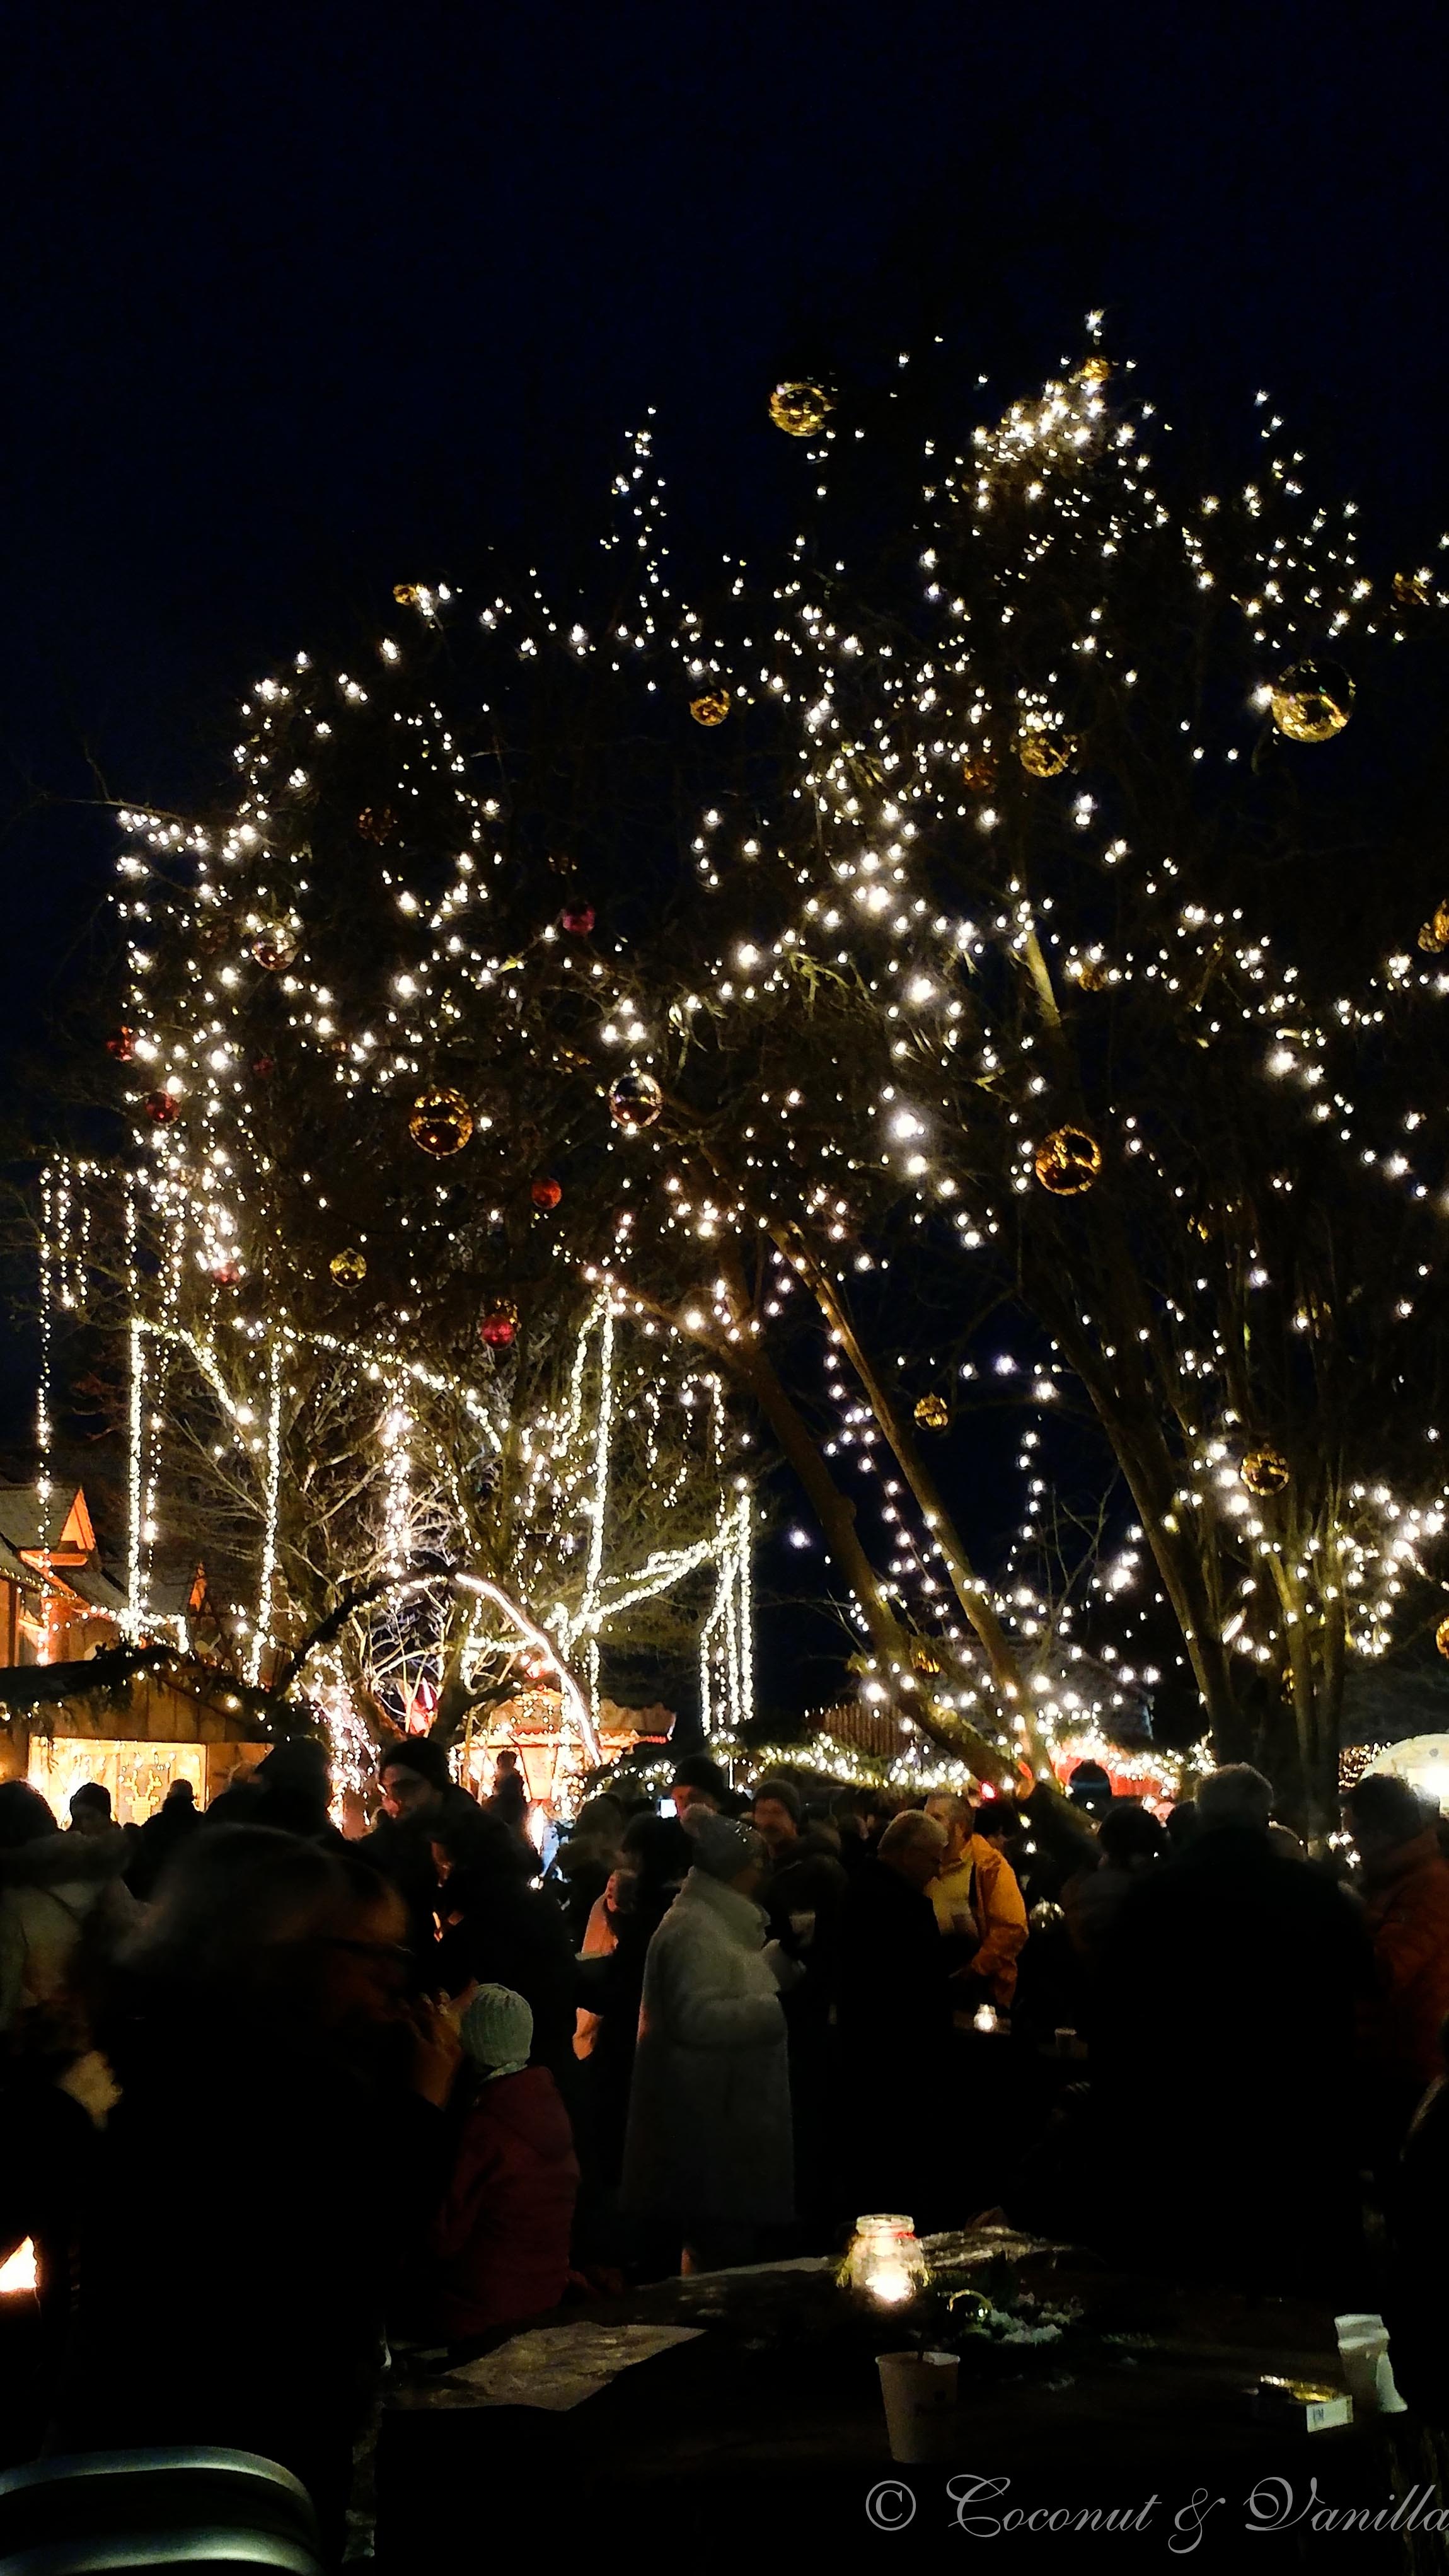 Romantischer Weihnachtsmarkt auf Gut Wolfgangshof in Anwanden/Zirndorf bei Fürth by Coconut & Vanilla